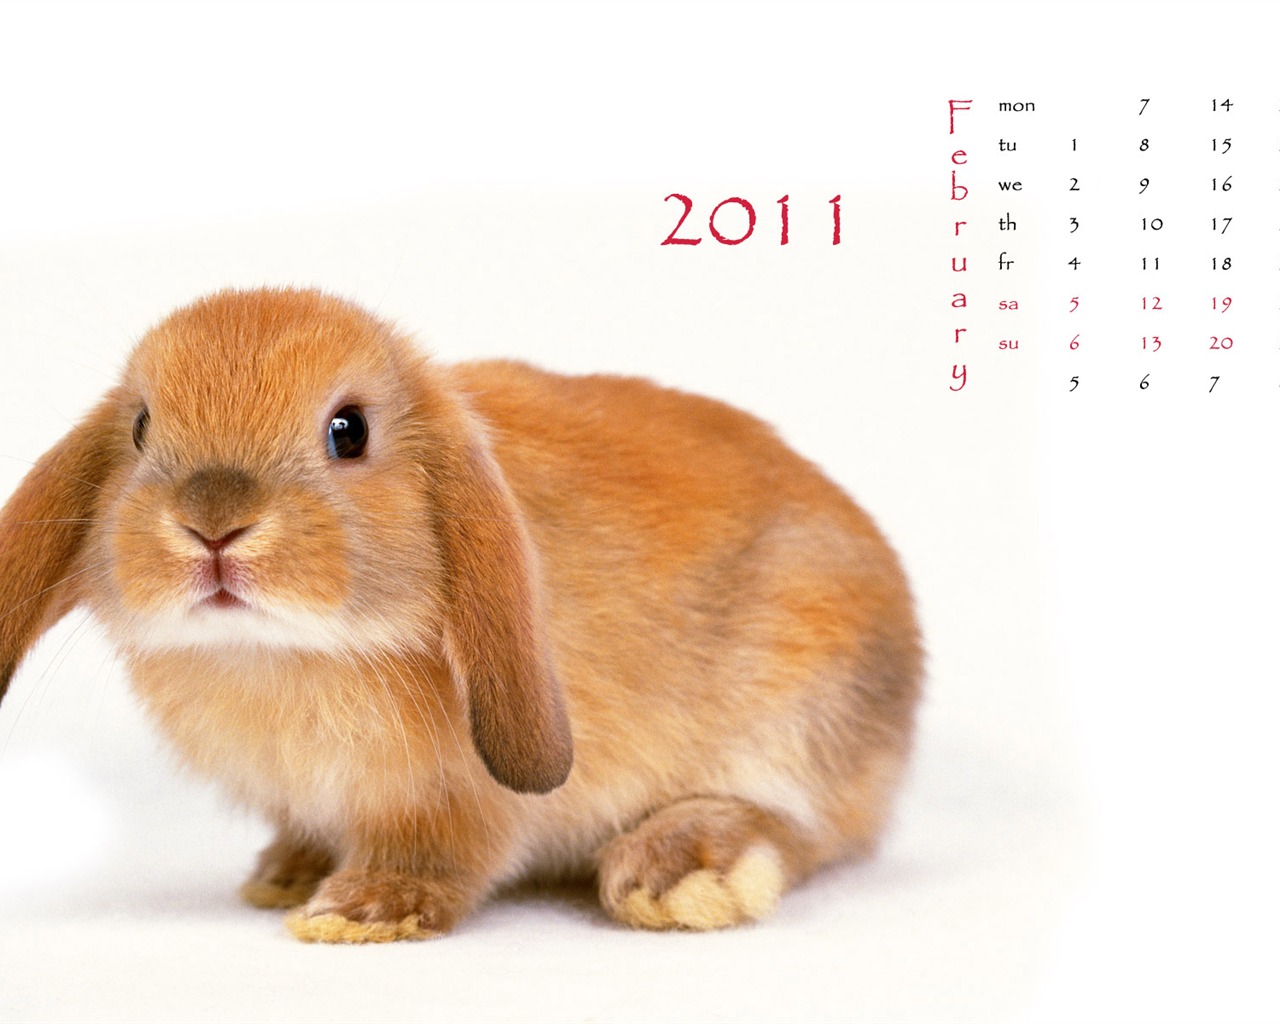 2011兔年日历 壁纸(一)1 - 1280x1024